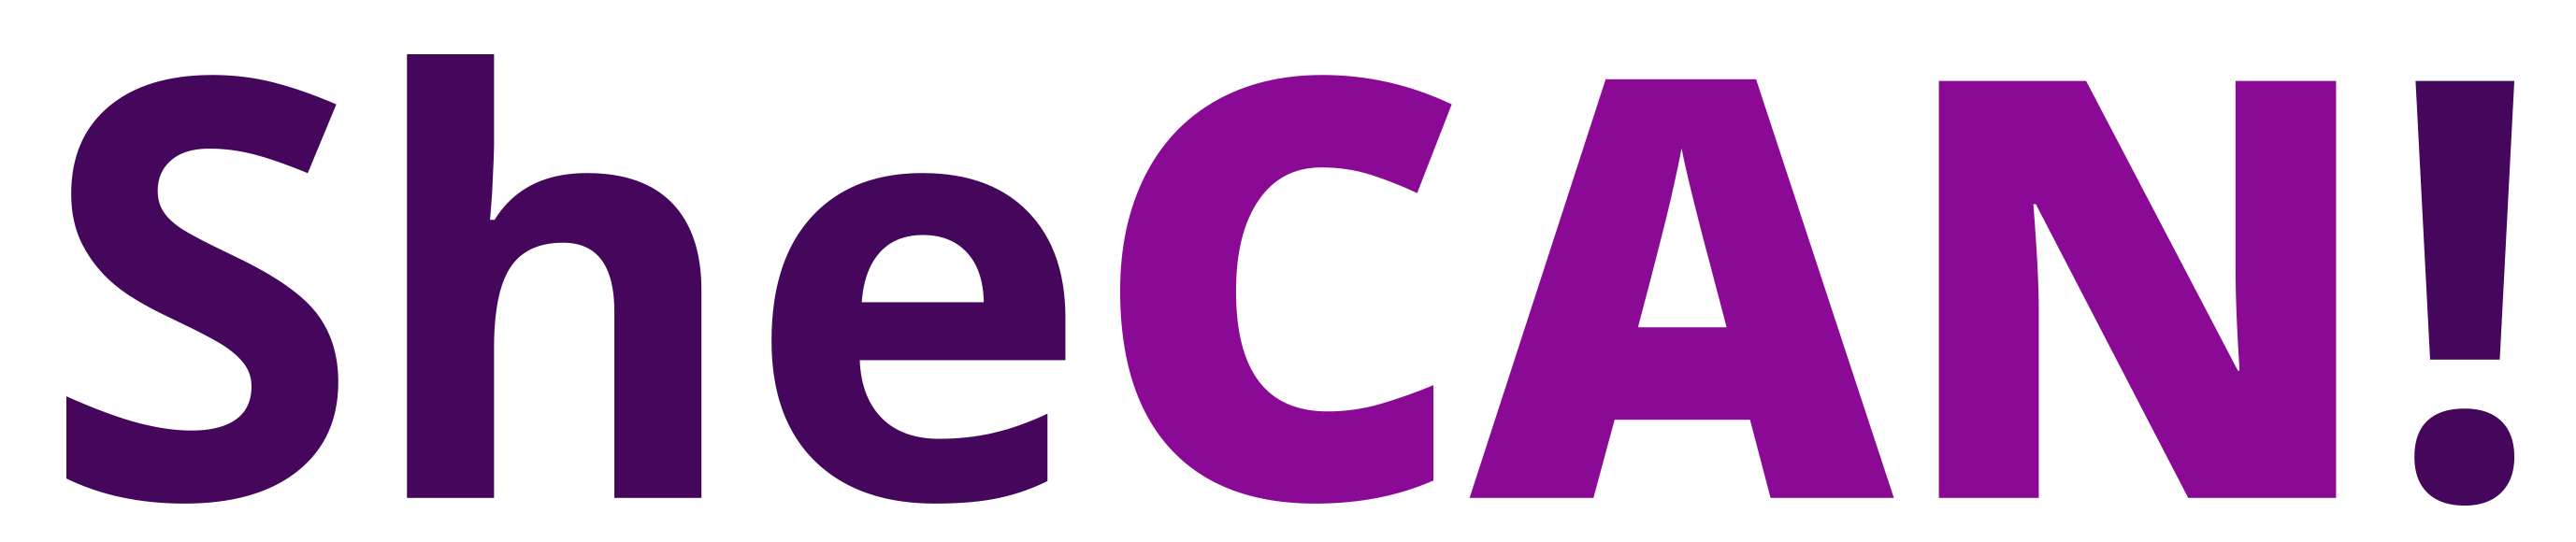 SheCAN! logo